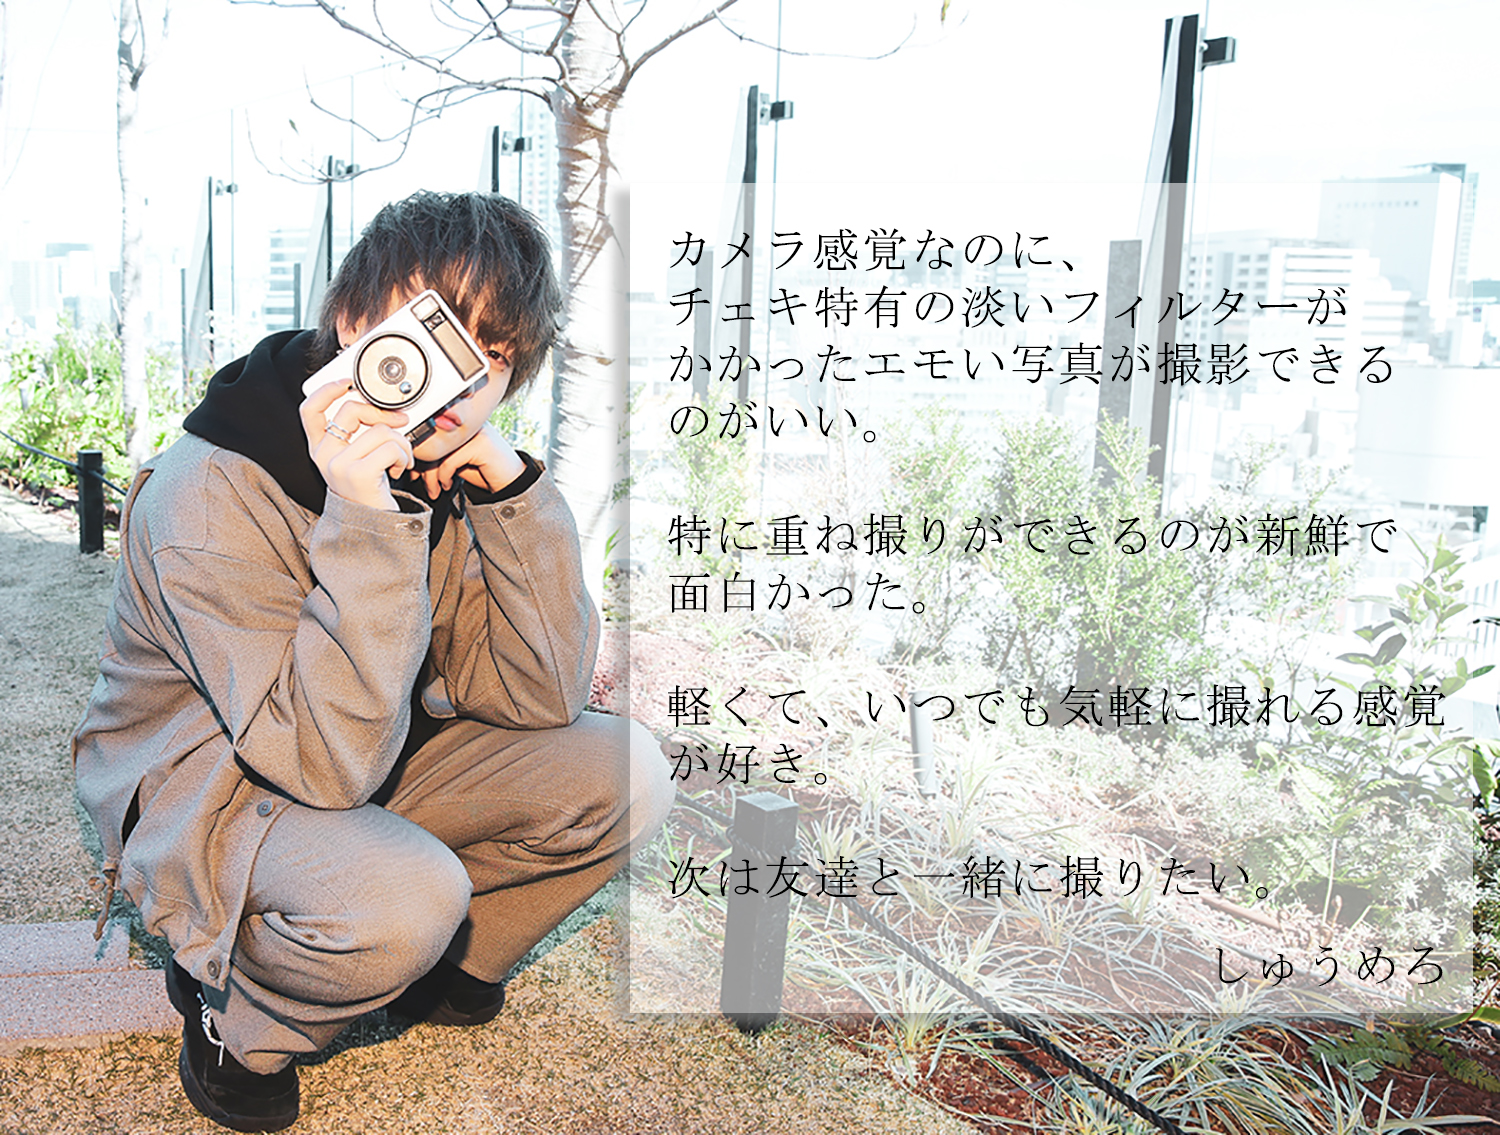 心揺さぶられる瞬間をアナログで記録 インスタントカメラ Pixtoss ピックトス から見えるエモい渋谷 Emo Miu エモミュー